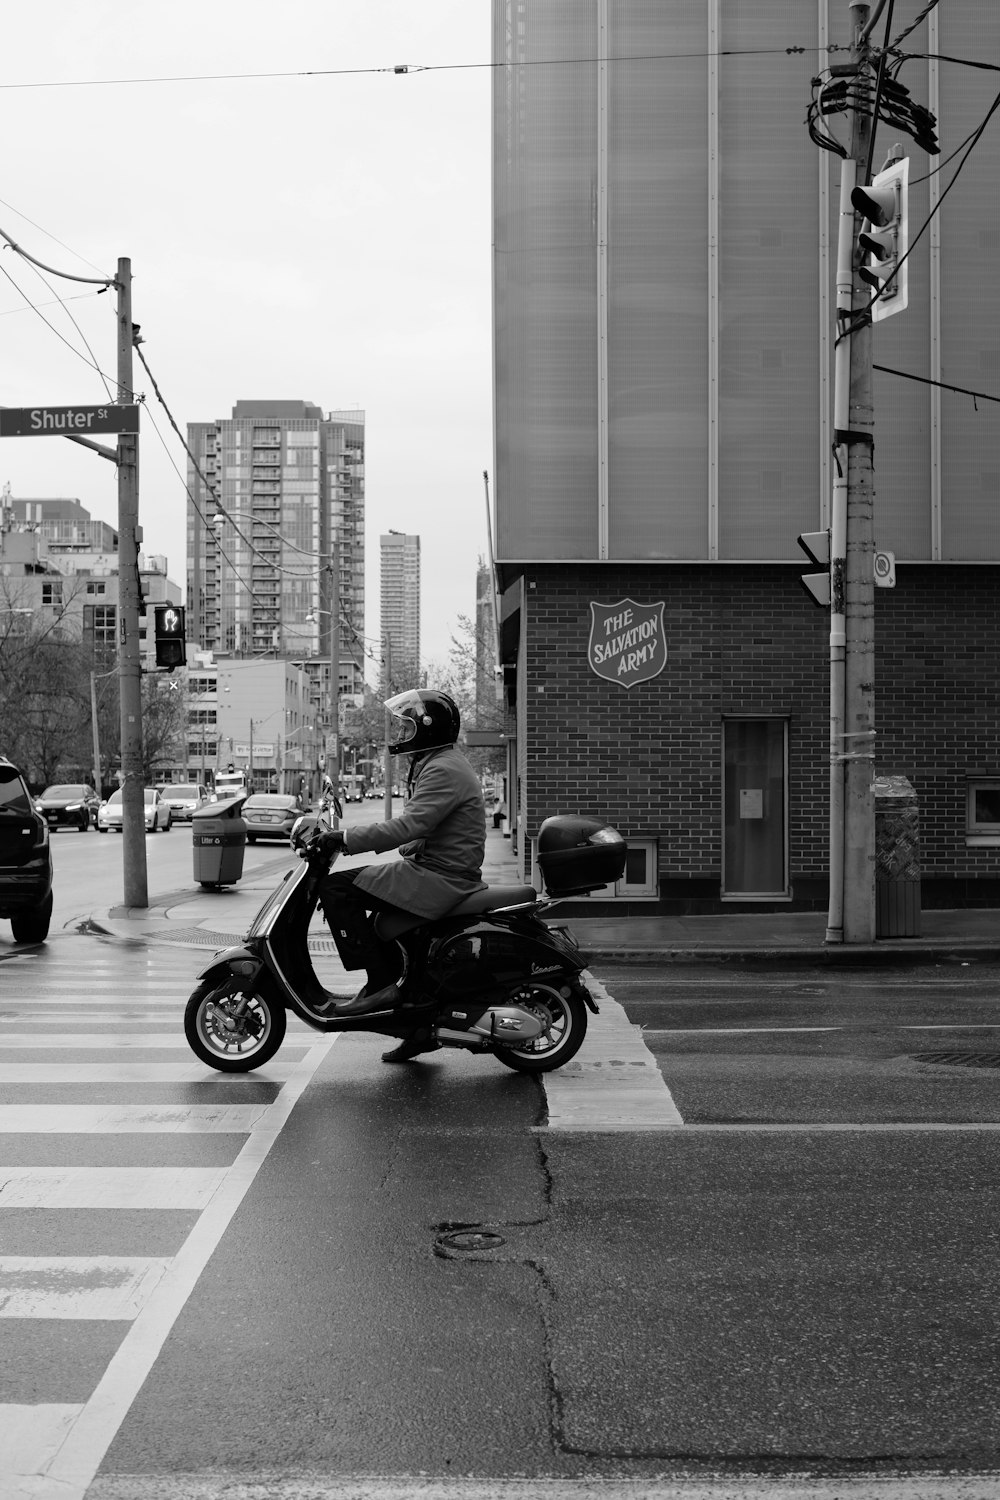 a man riding a motorcycle across a street